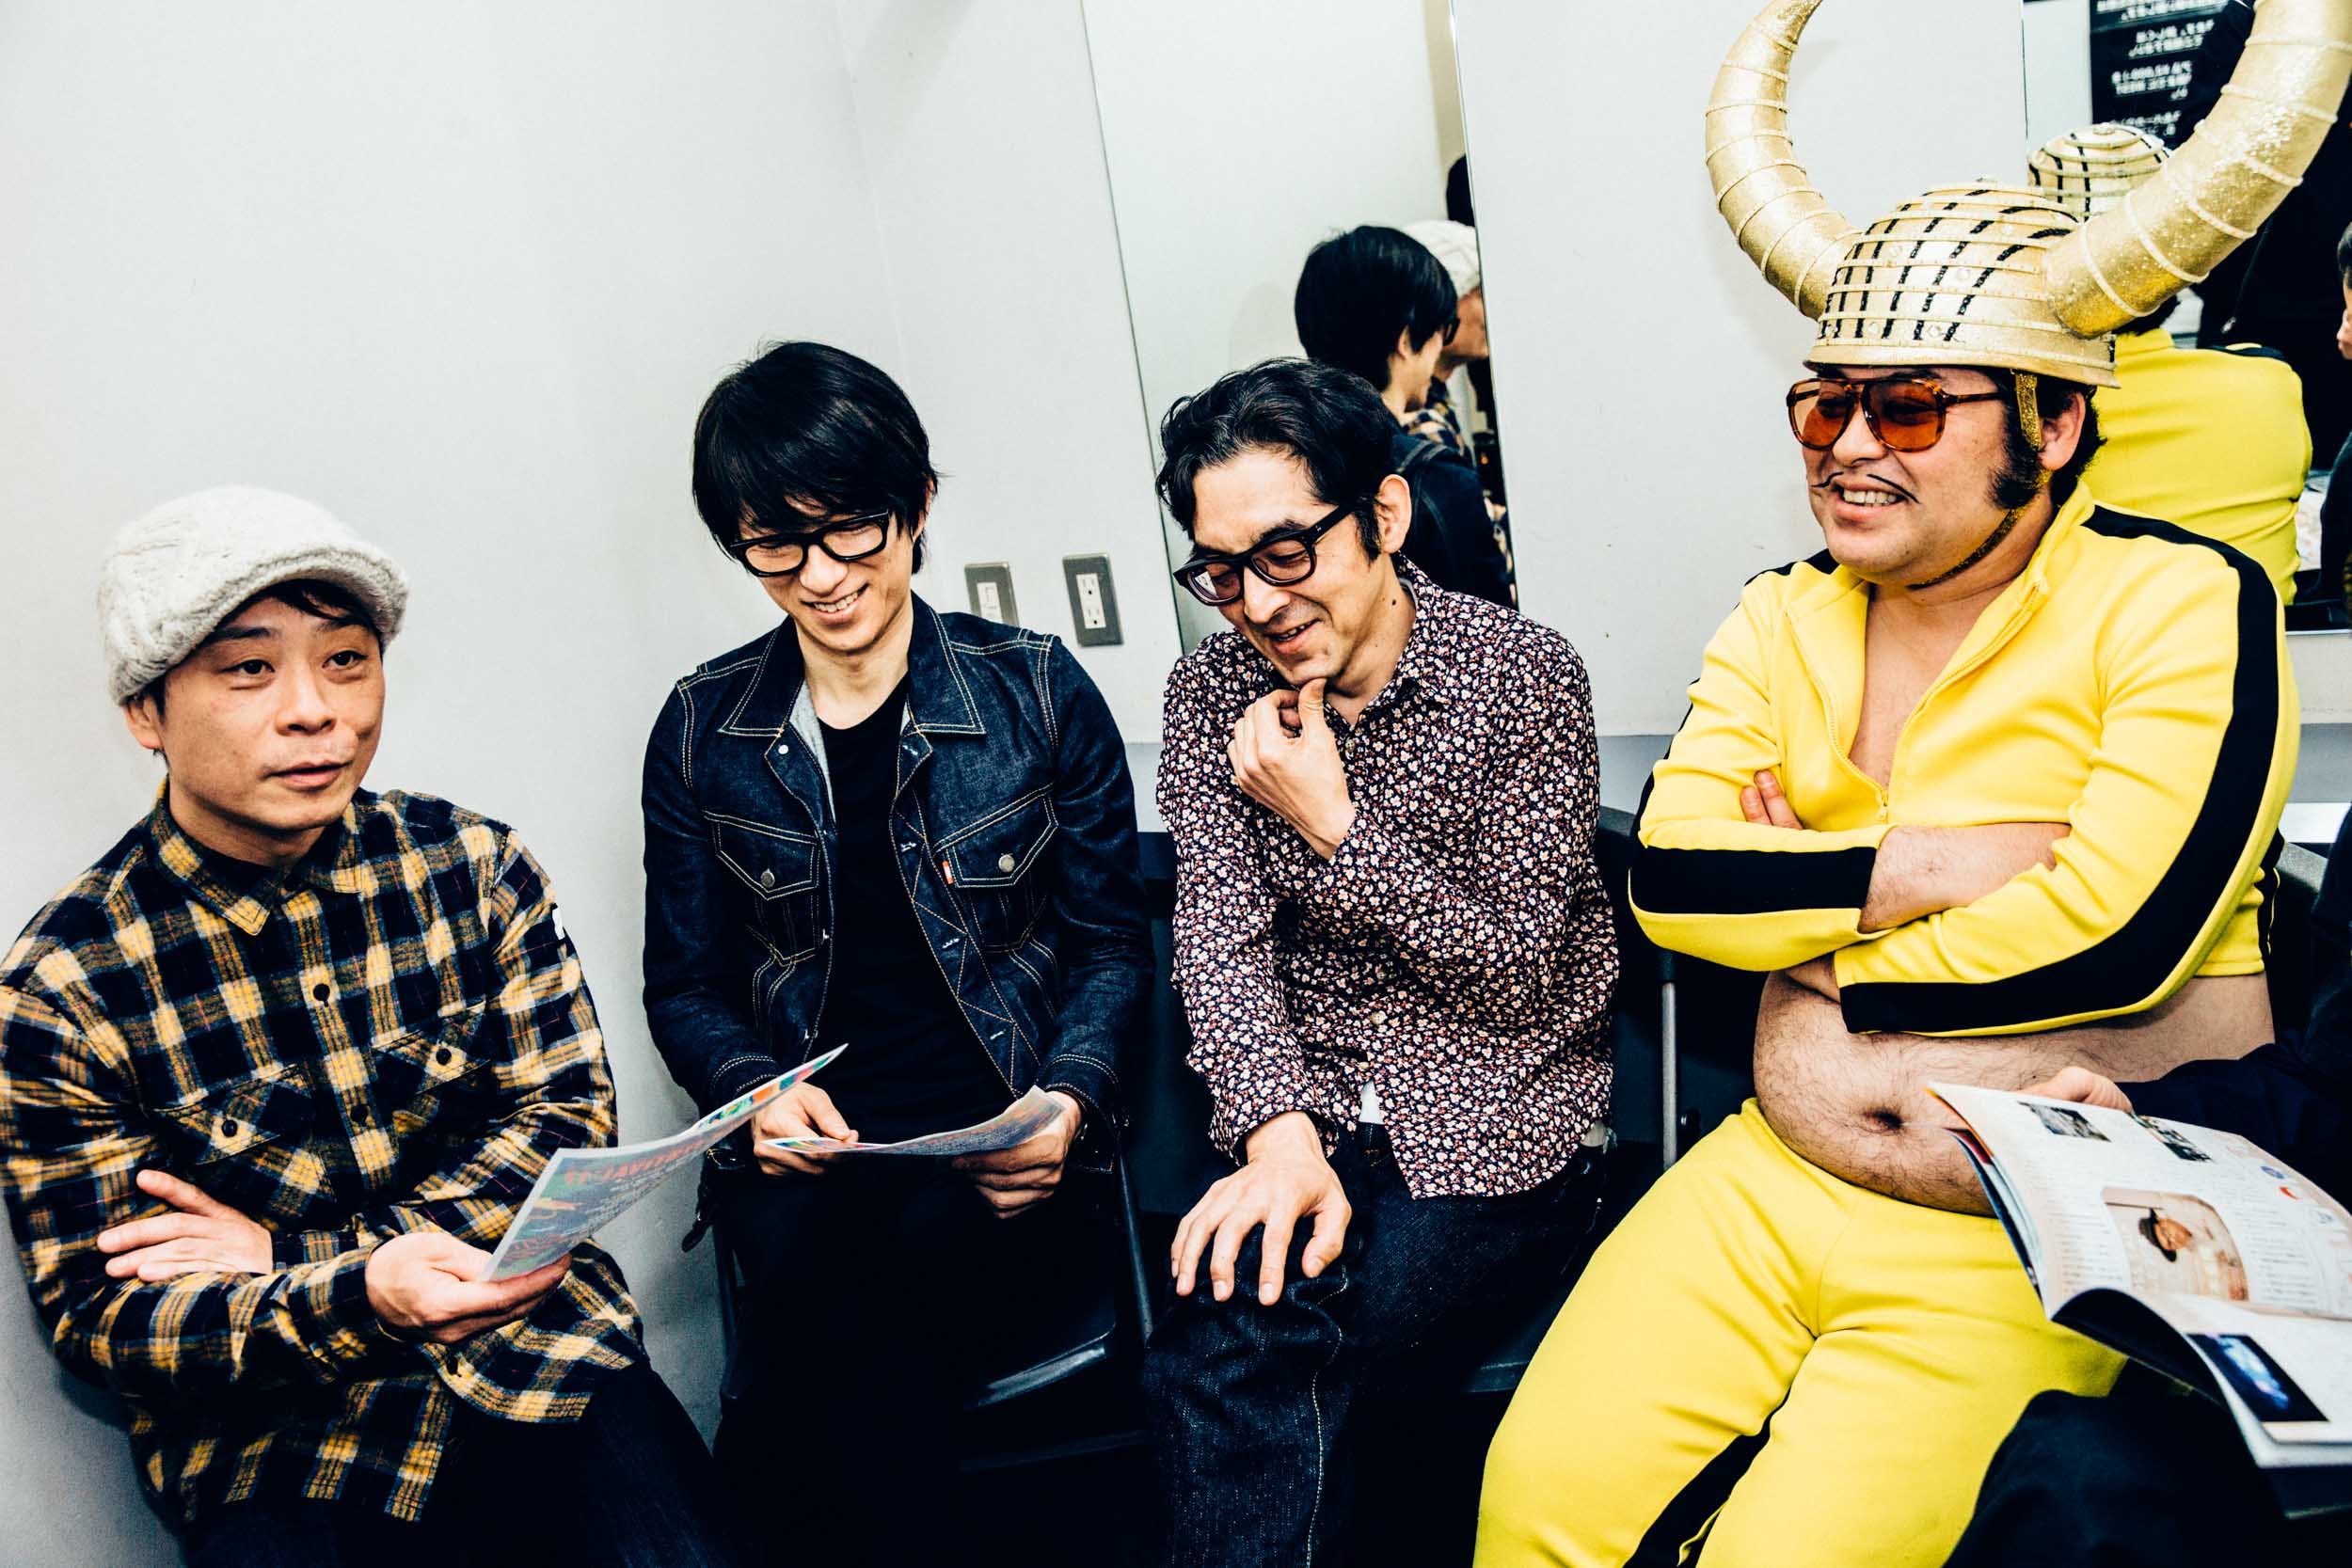 グループ魂 念願のフジロック初出演決定 メンバー全員にインタビュー Page 2 Of 2 富士祭電子瓦版 Fuji Rock Festival Electronic News